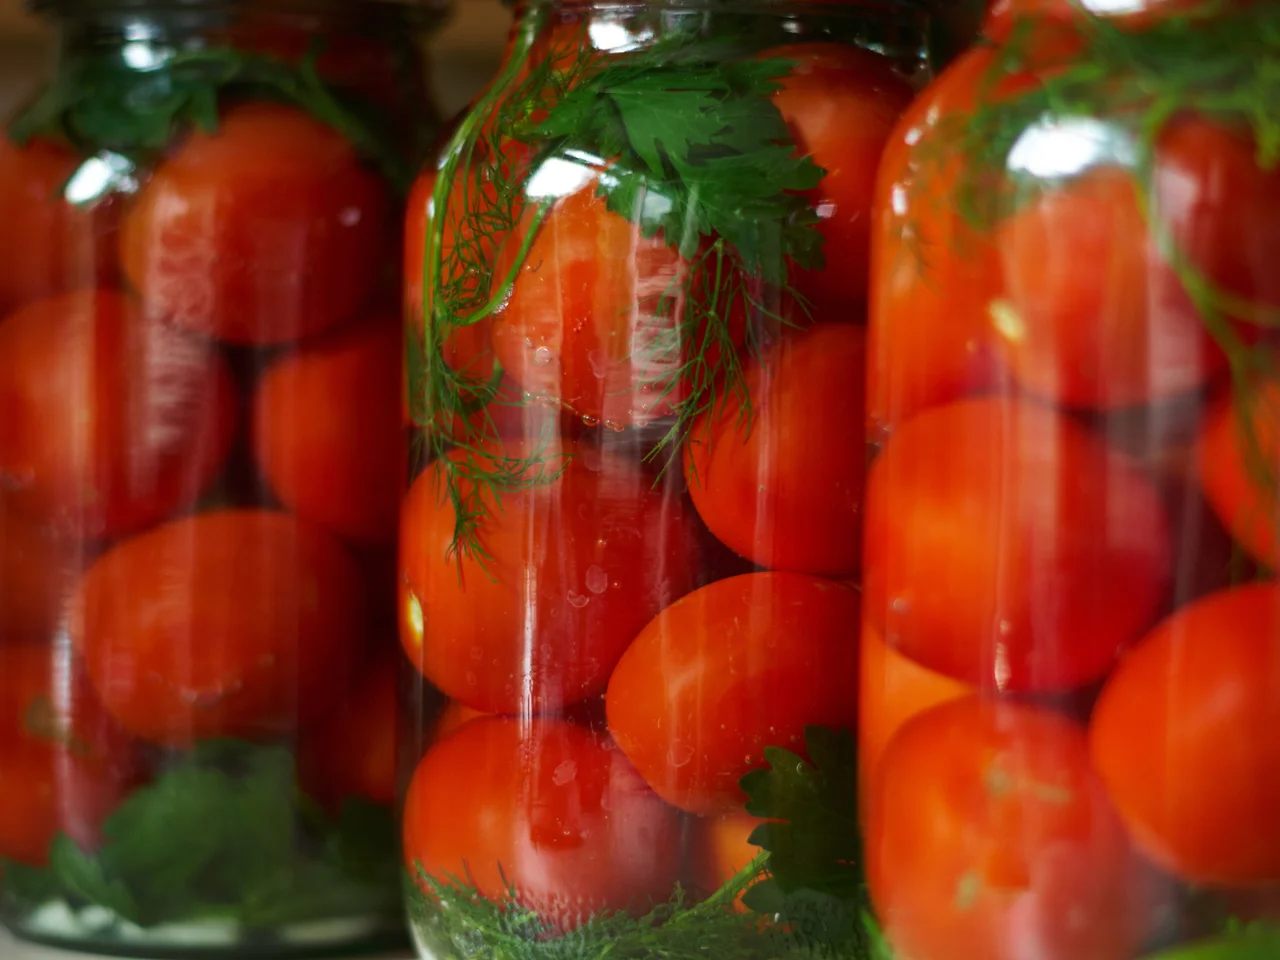 Kiszone pomidory - bomba witaminowa! Jak je zrobić?